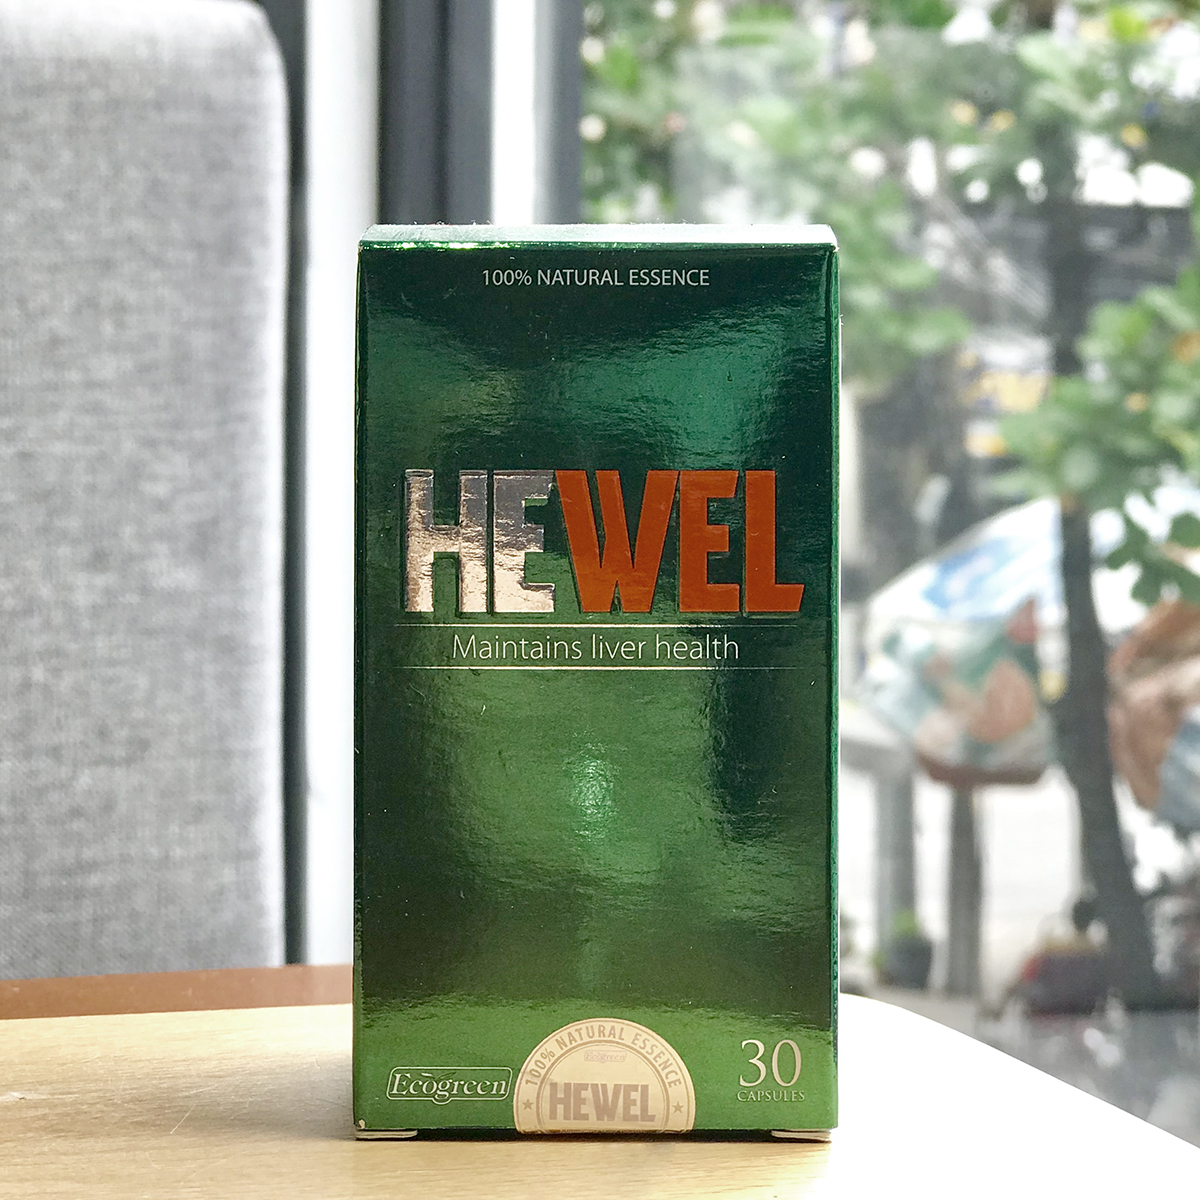 hewel